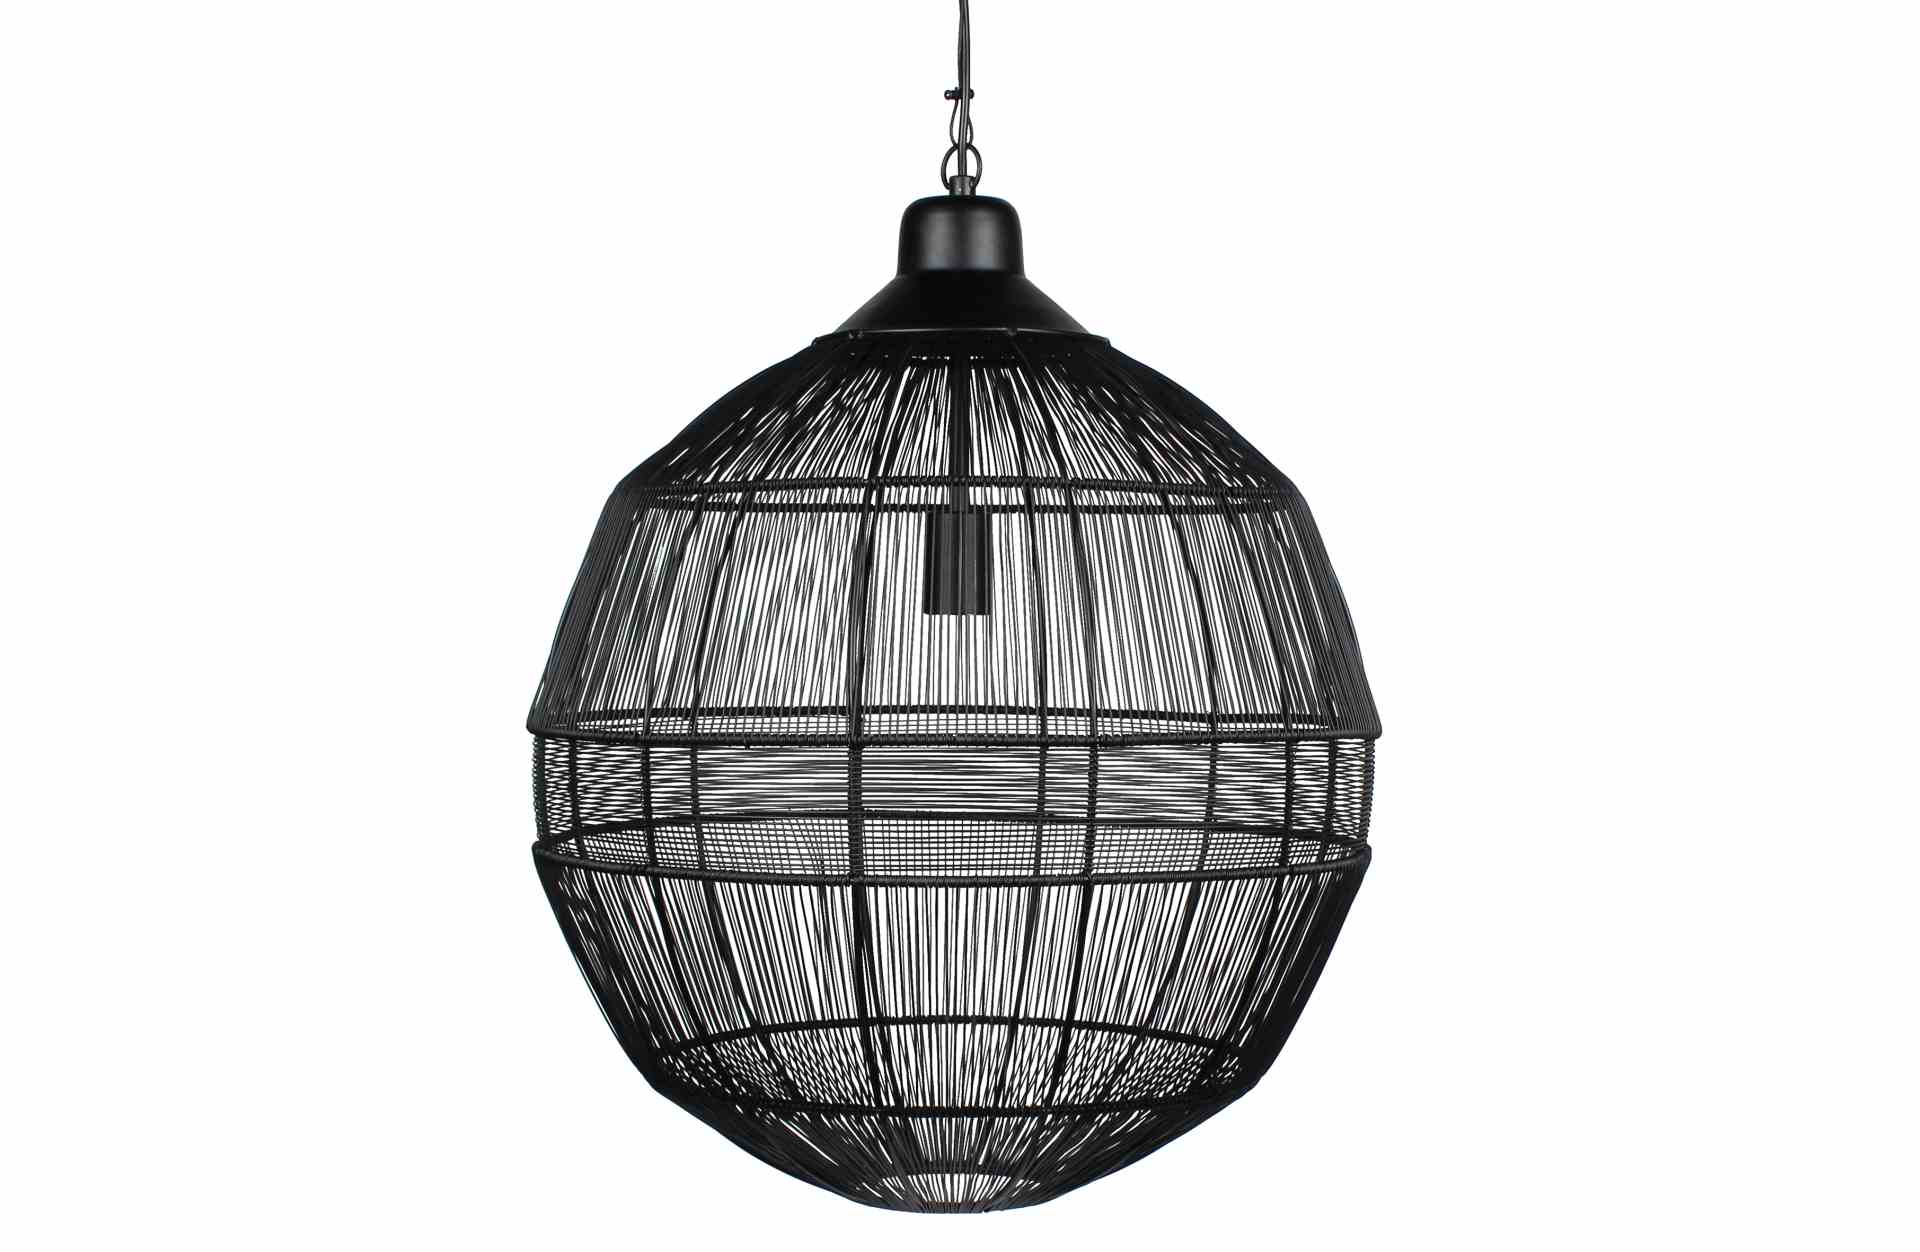 Die Hängelampe Enes überzeugt mit ihrem modernen Design und macht jeden Wohnbereich zu einem echten Hingucker. Gefertigt wurde die Lampe aus Metall, welches einen schwarzen Farbton besitzt.